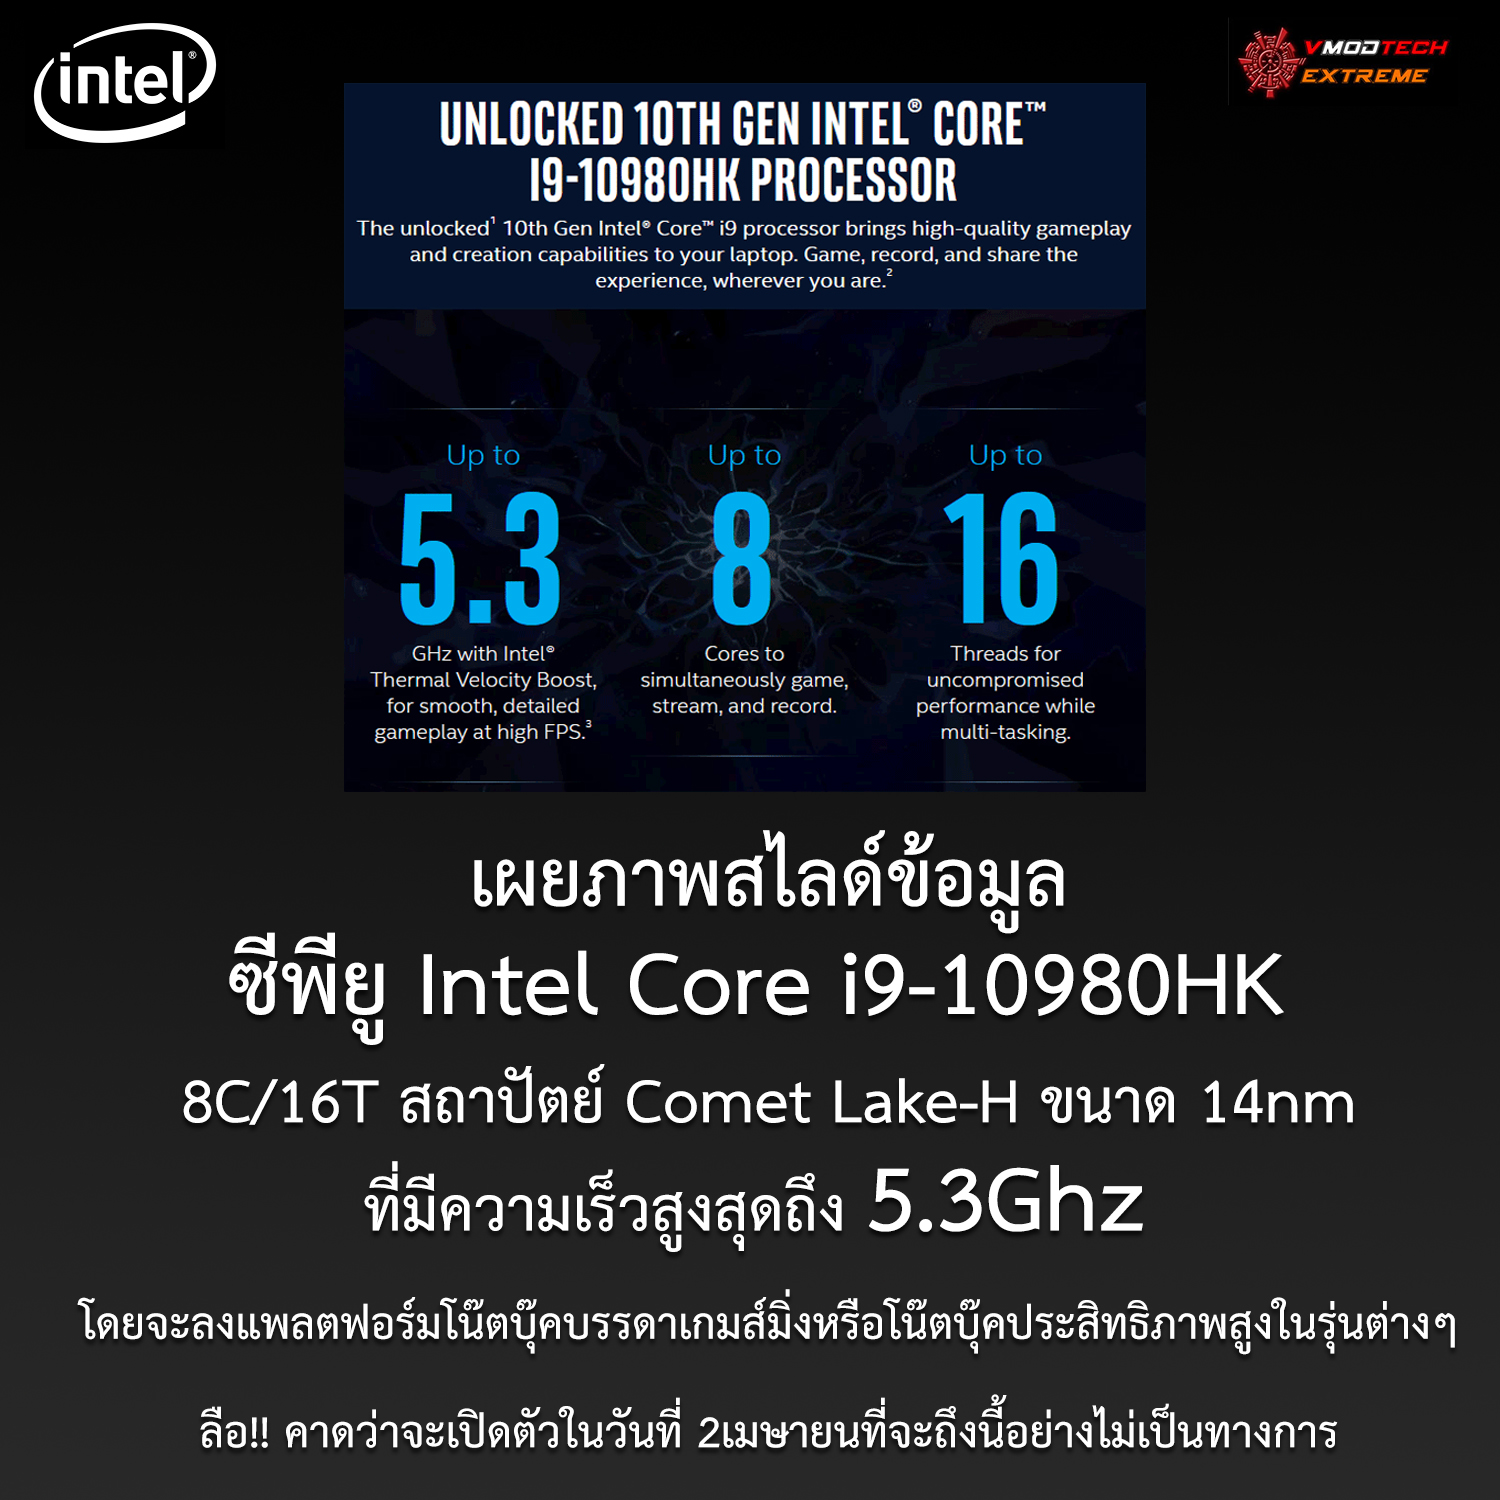 intel core i9 10980hk เผยภาพสไลด์ซีพียู Intel Core i9 10980HK ใช้งานในโน๊ตบุ๊คประสิทธิภาพสูงที่มีความเร็วสูงสุดถึง 5.3Ghz กันเลยทีเดียว 